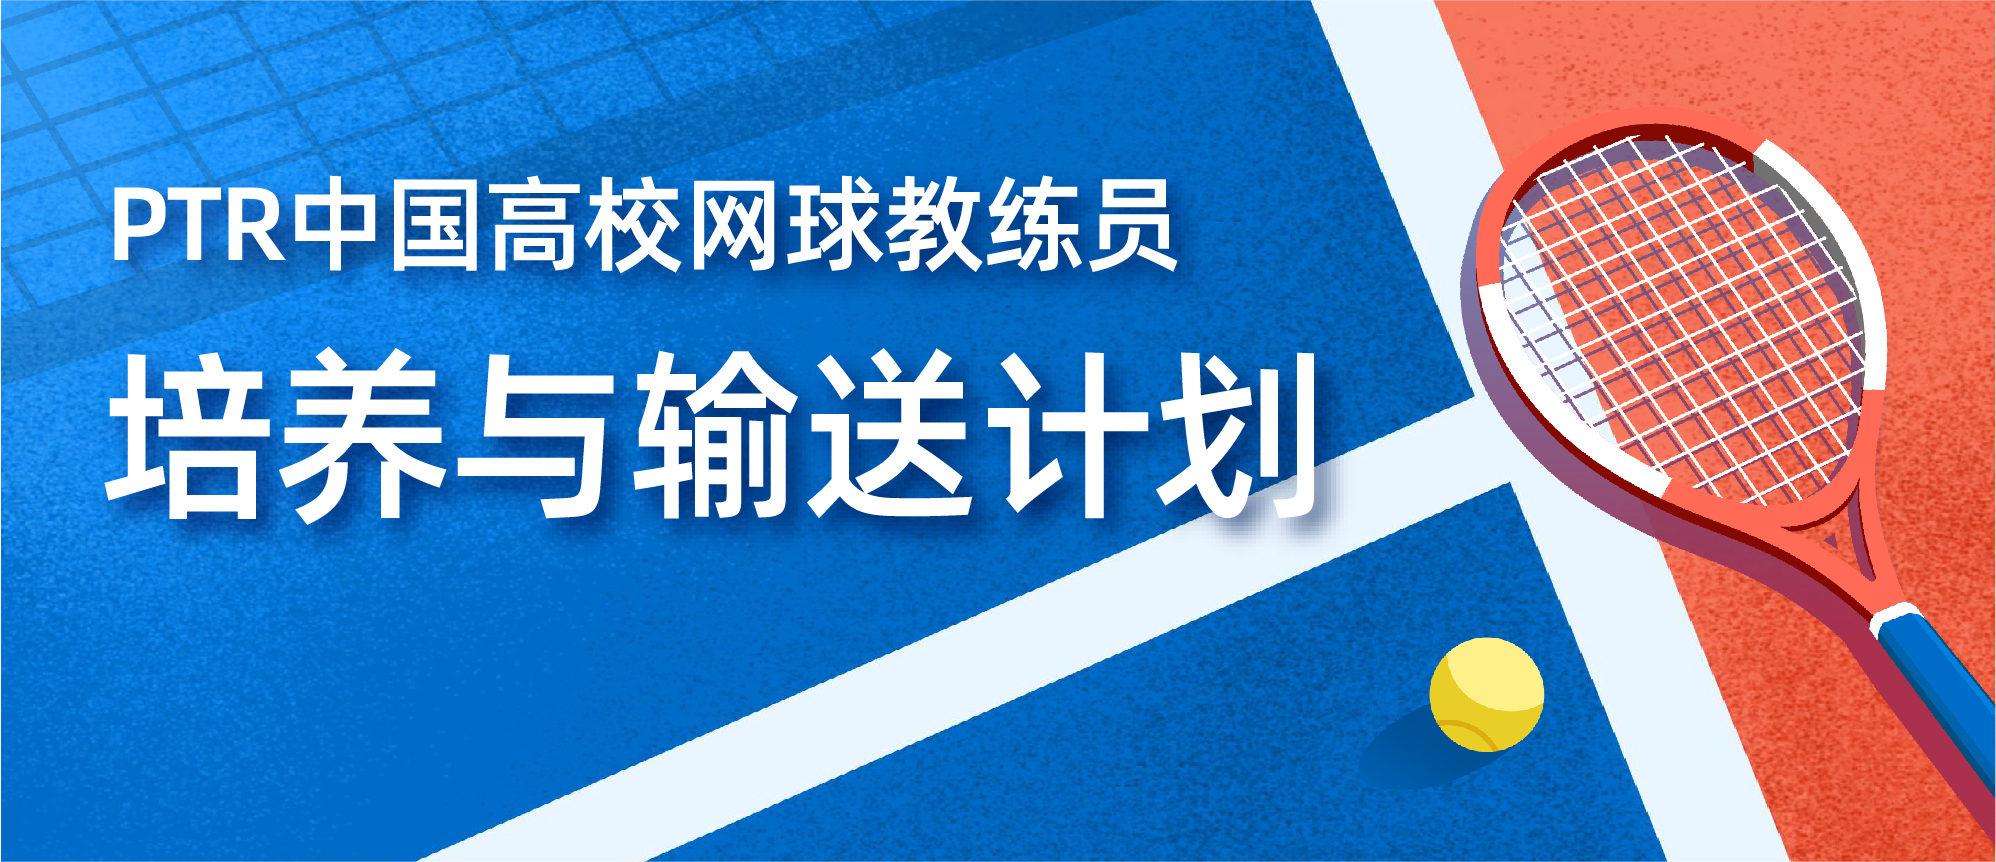 PTR中国高校网球教练员培养与输送计划（高校版）